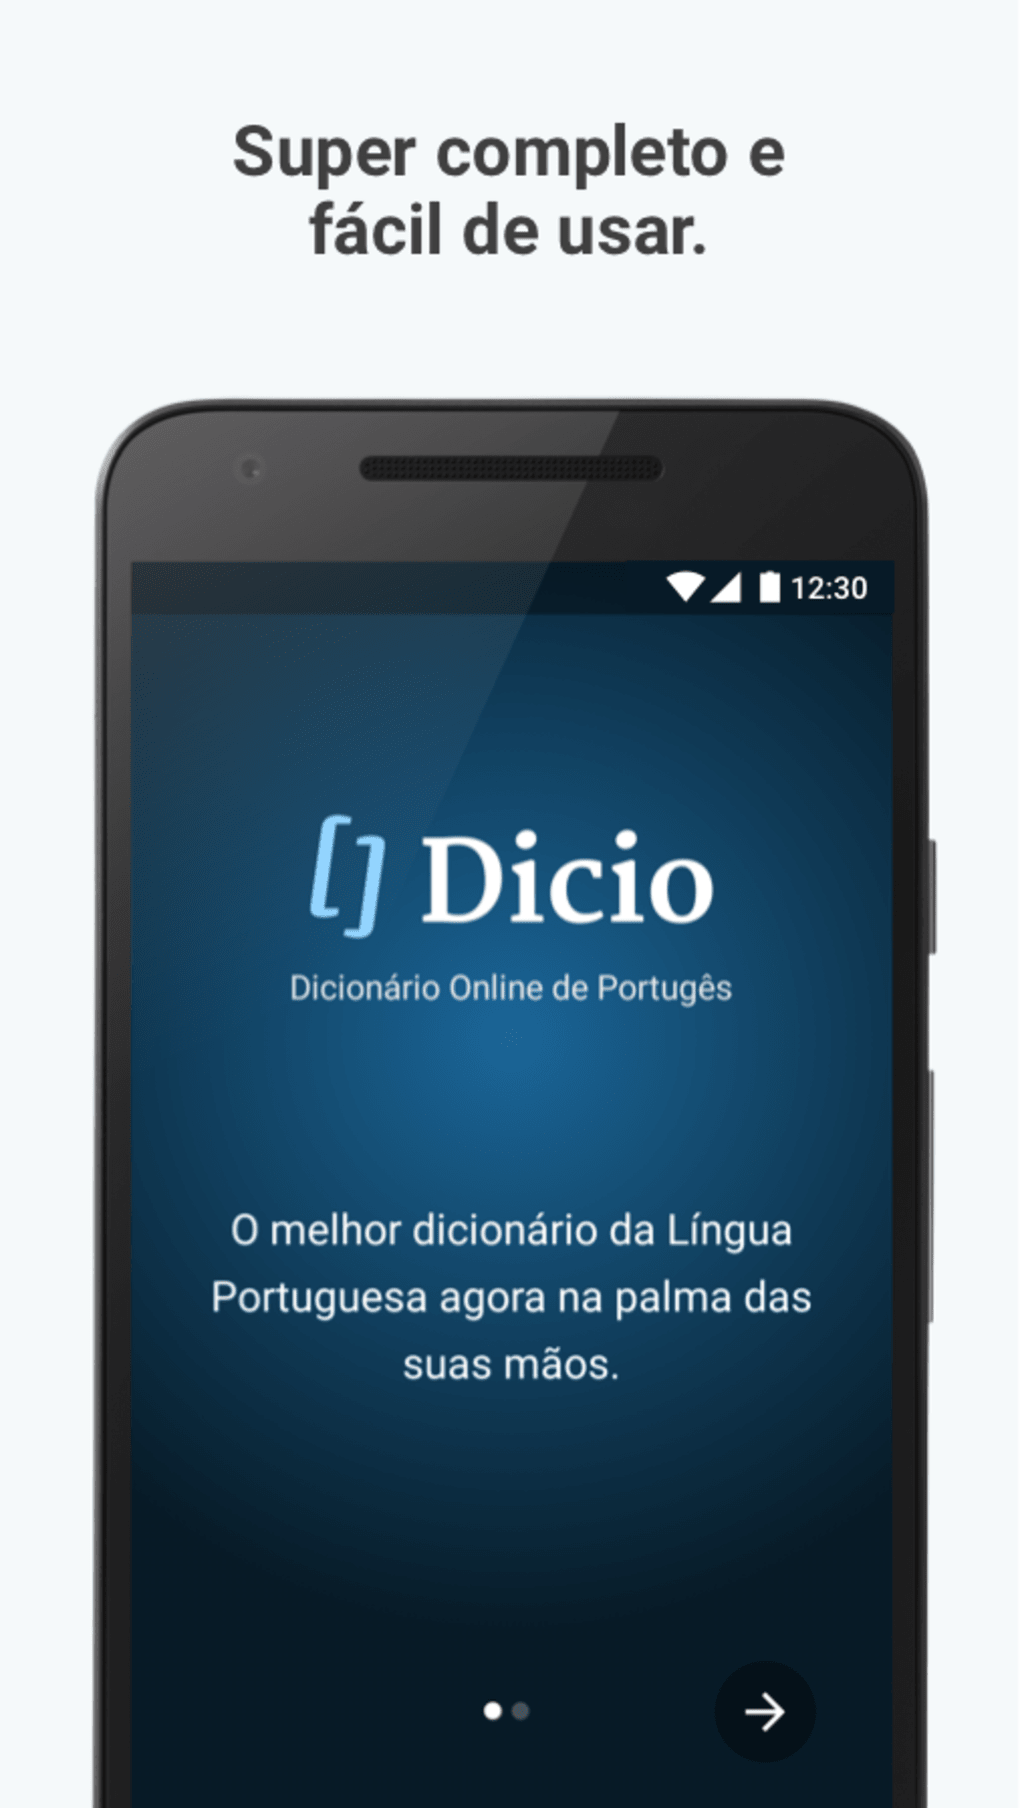 Caí - Dicio, Dicionário Online de Português